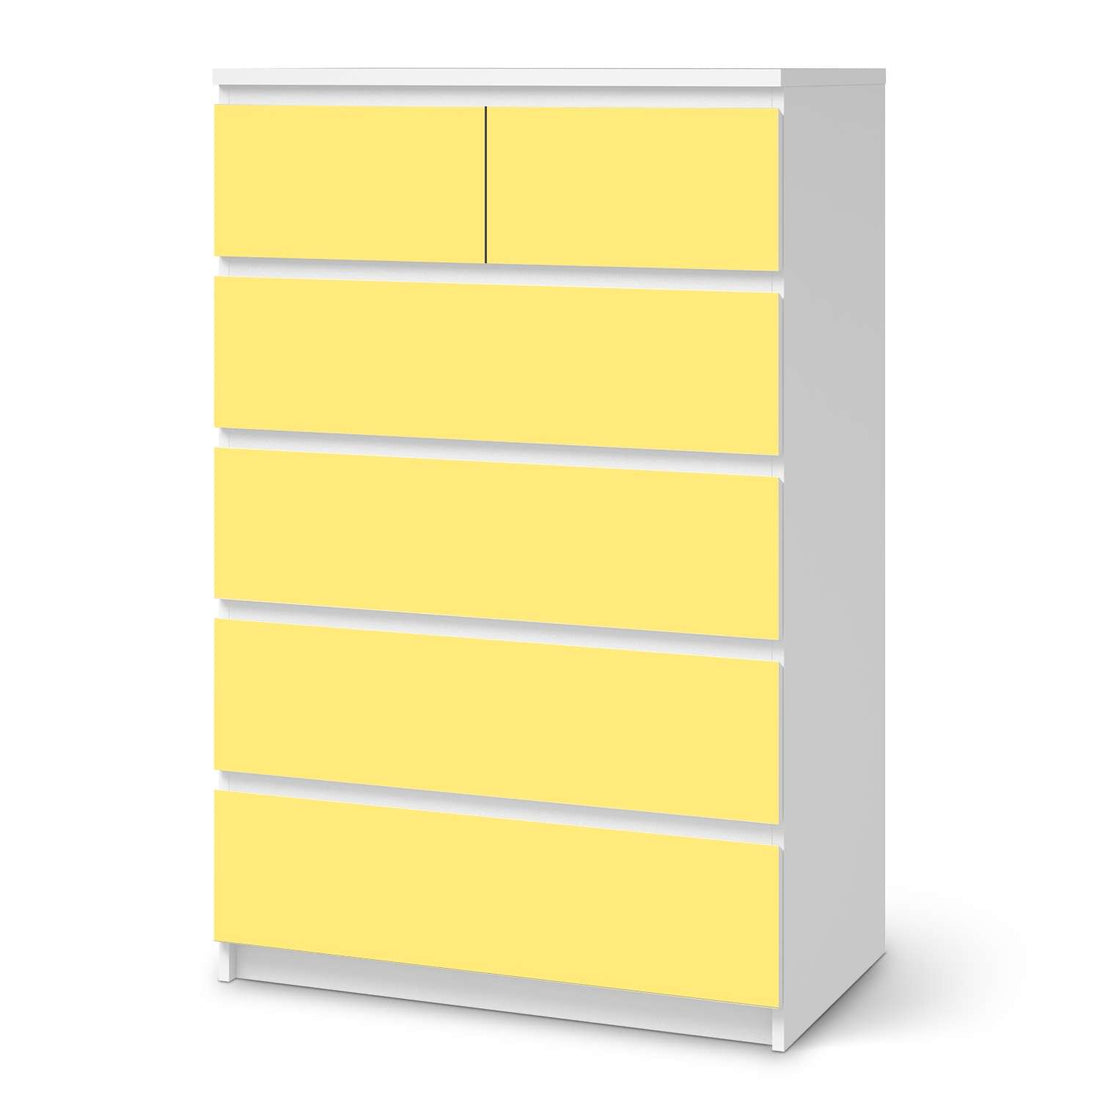 Möbel Klebefolie Gelb Light - IKEA Malm Kommode 6 Schubladen (hoch)  - weiss